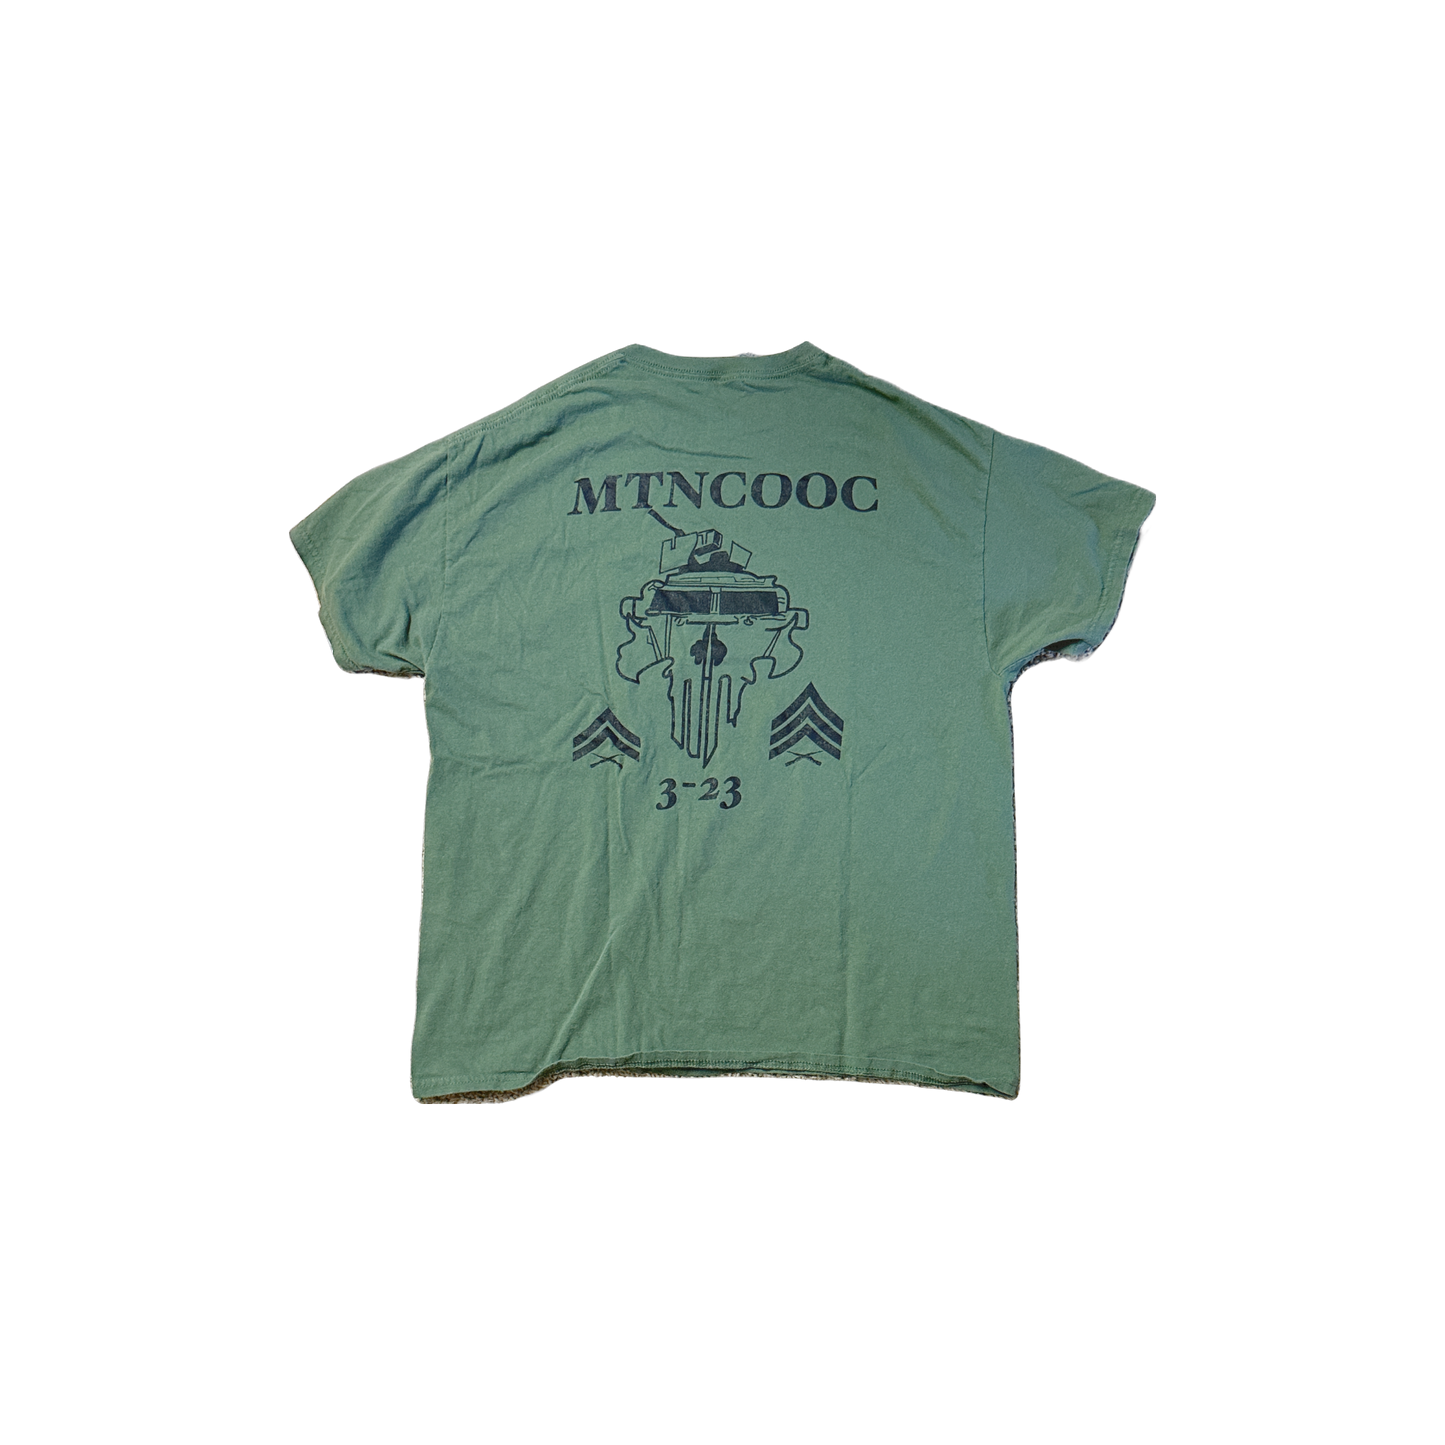 Custom "MTNCOOC 3-33" Class Shirt